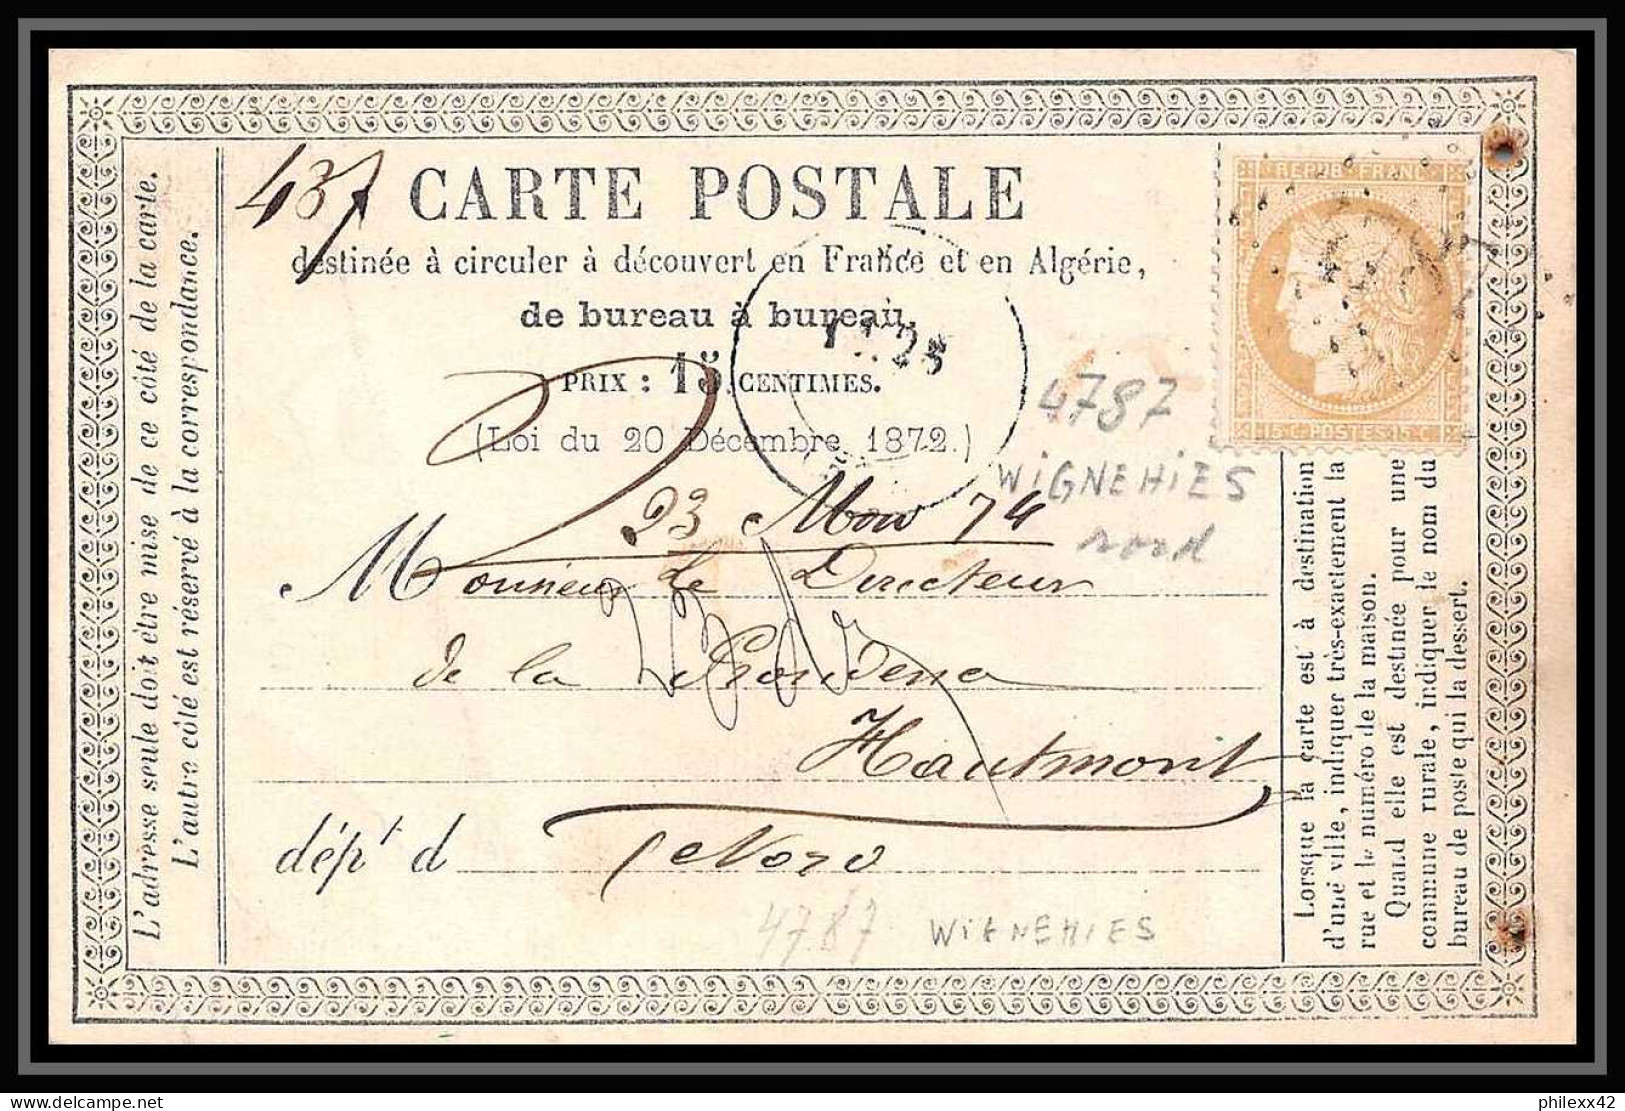 8761 LAC Entete Mairesse N 59 Ceres 15c GC 4787 Wignehies Nord 1874 France Precurseur Carte Postale (postcard) - Cartes Précurseurs